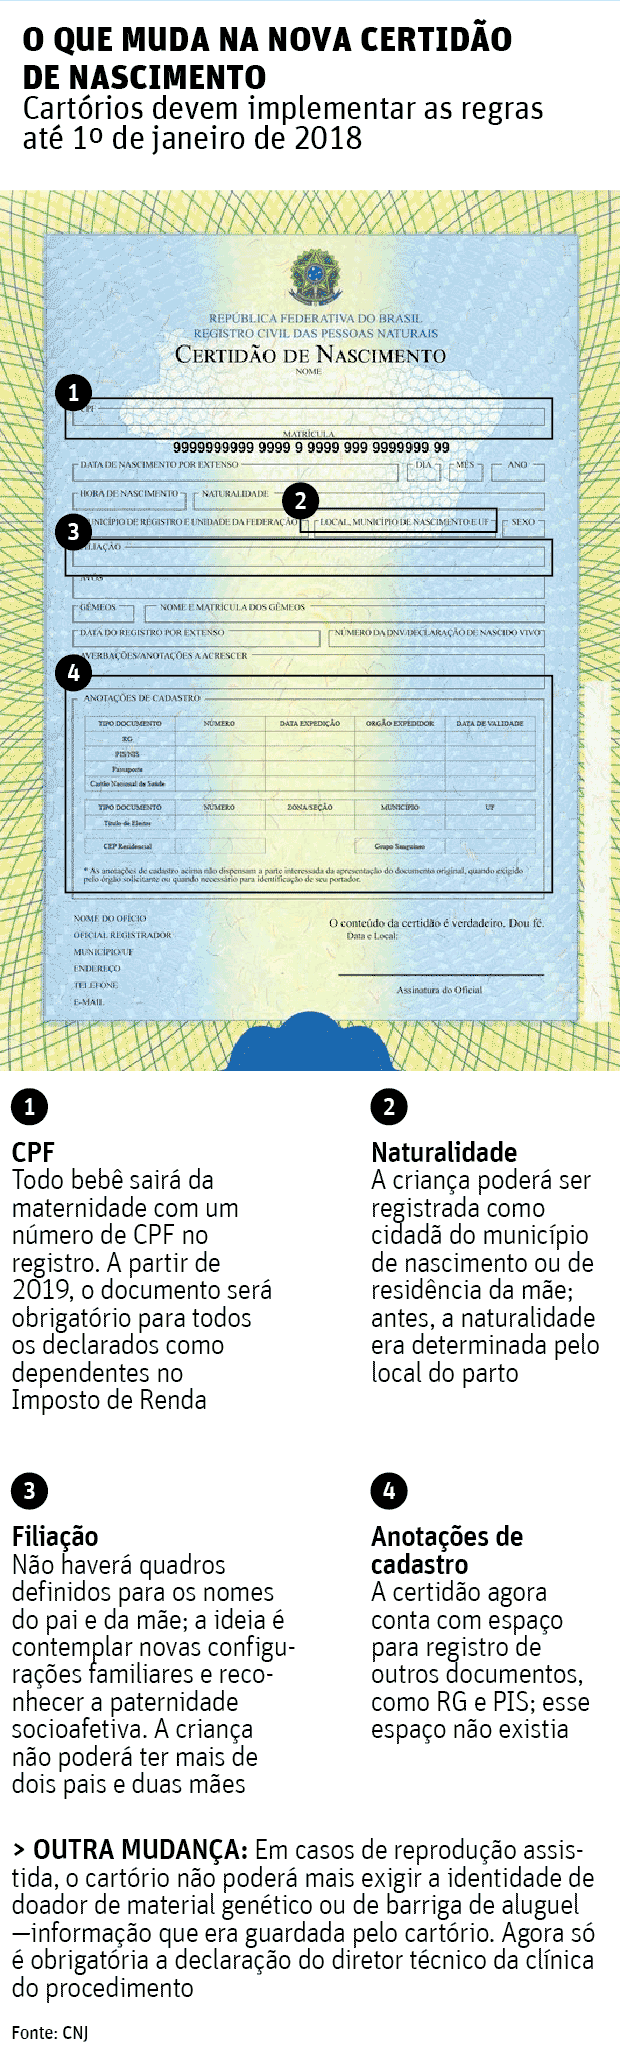 O QUE MUDA NA NOVA CERTIDO DE NASCIMENTOCartrios devem implementar as regras at 1 de janeiro de 2018